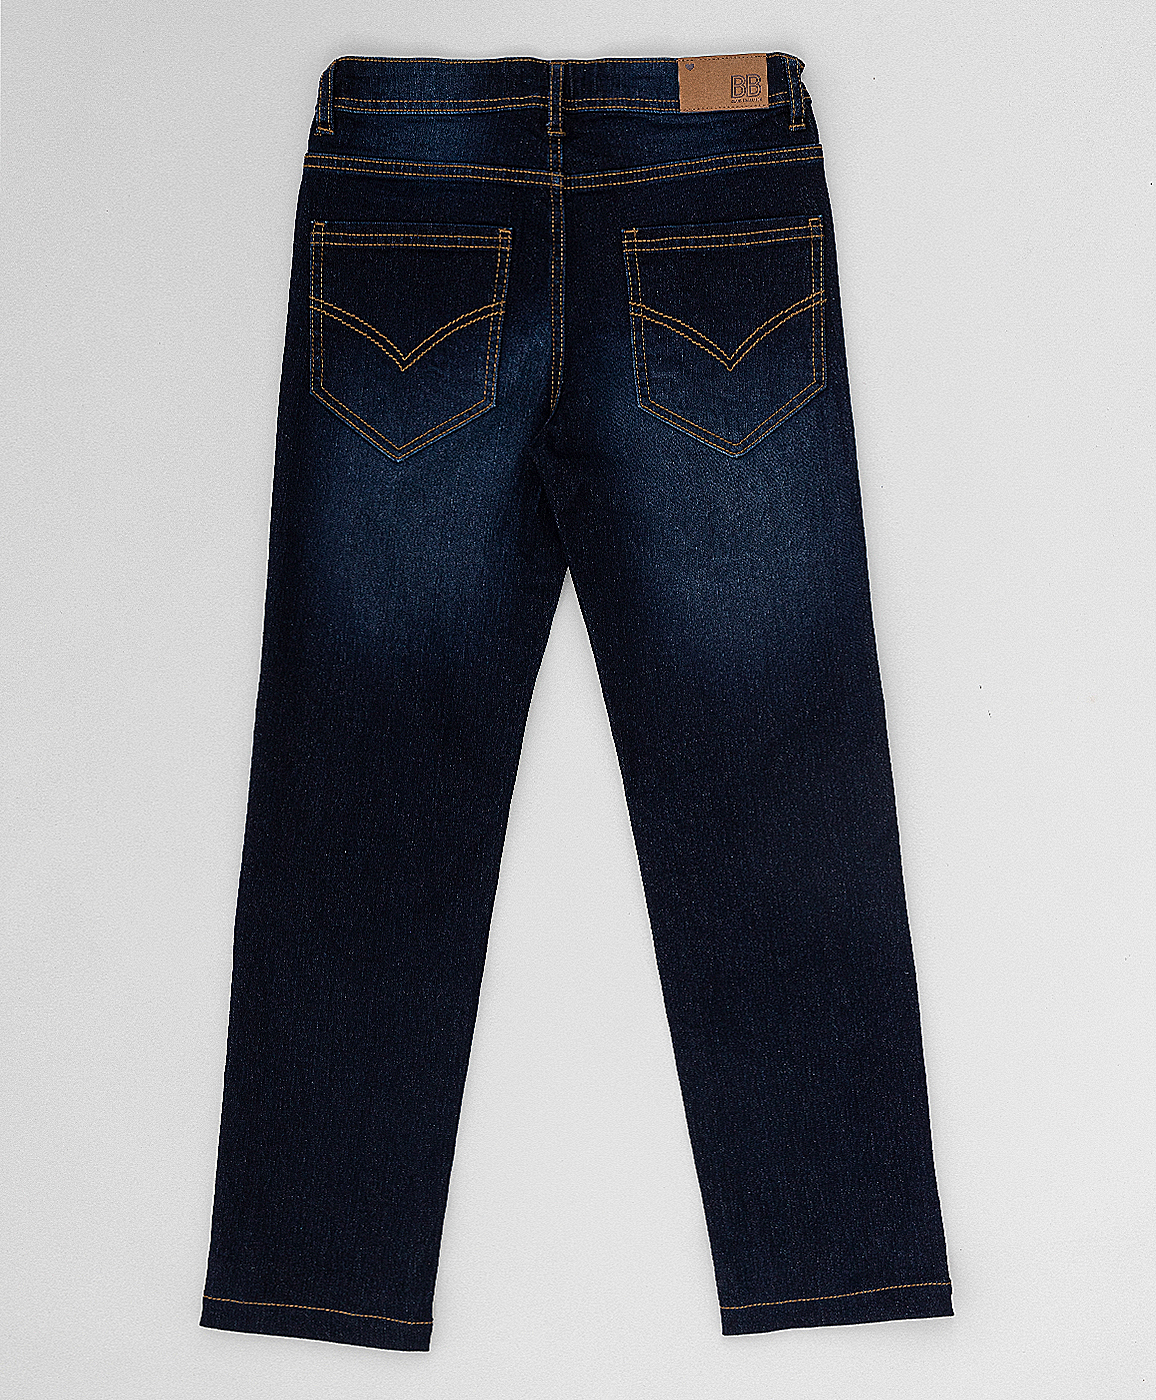 Темно-синие джинсы Button Blue 220BBGMC6302D500, размер 110, цвет синий regular fit / прямые - фото 4